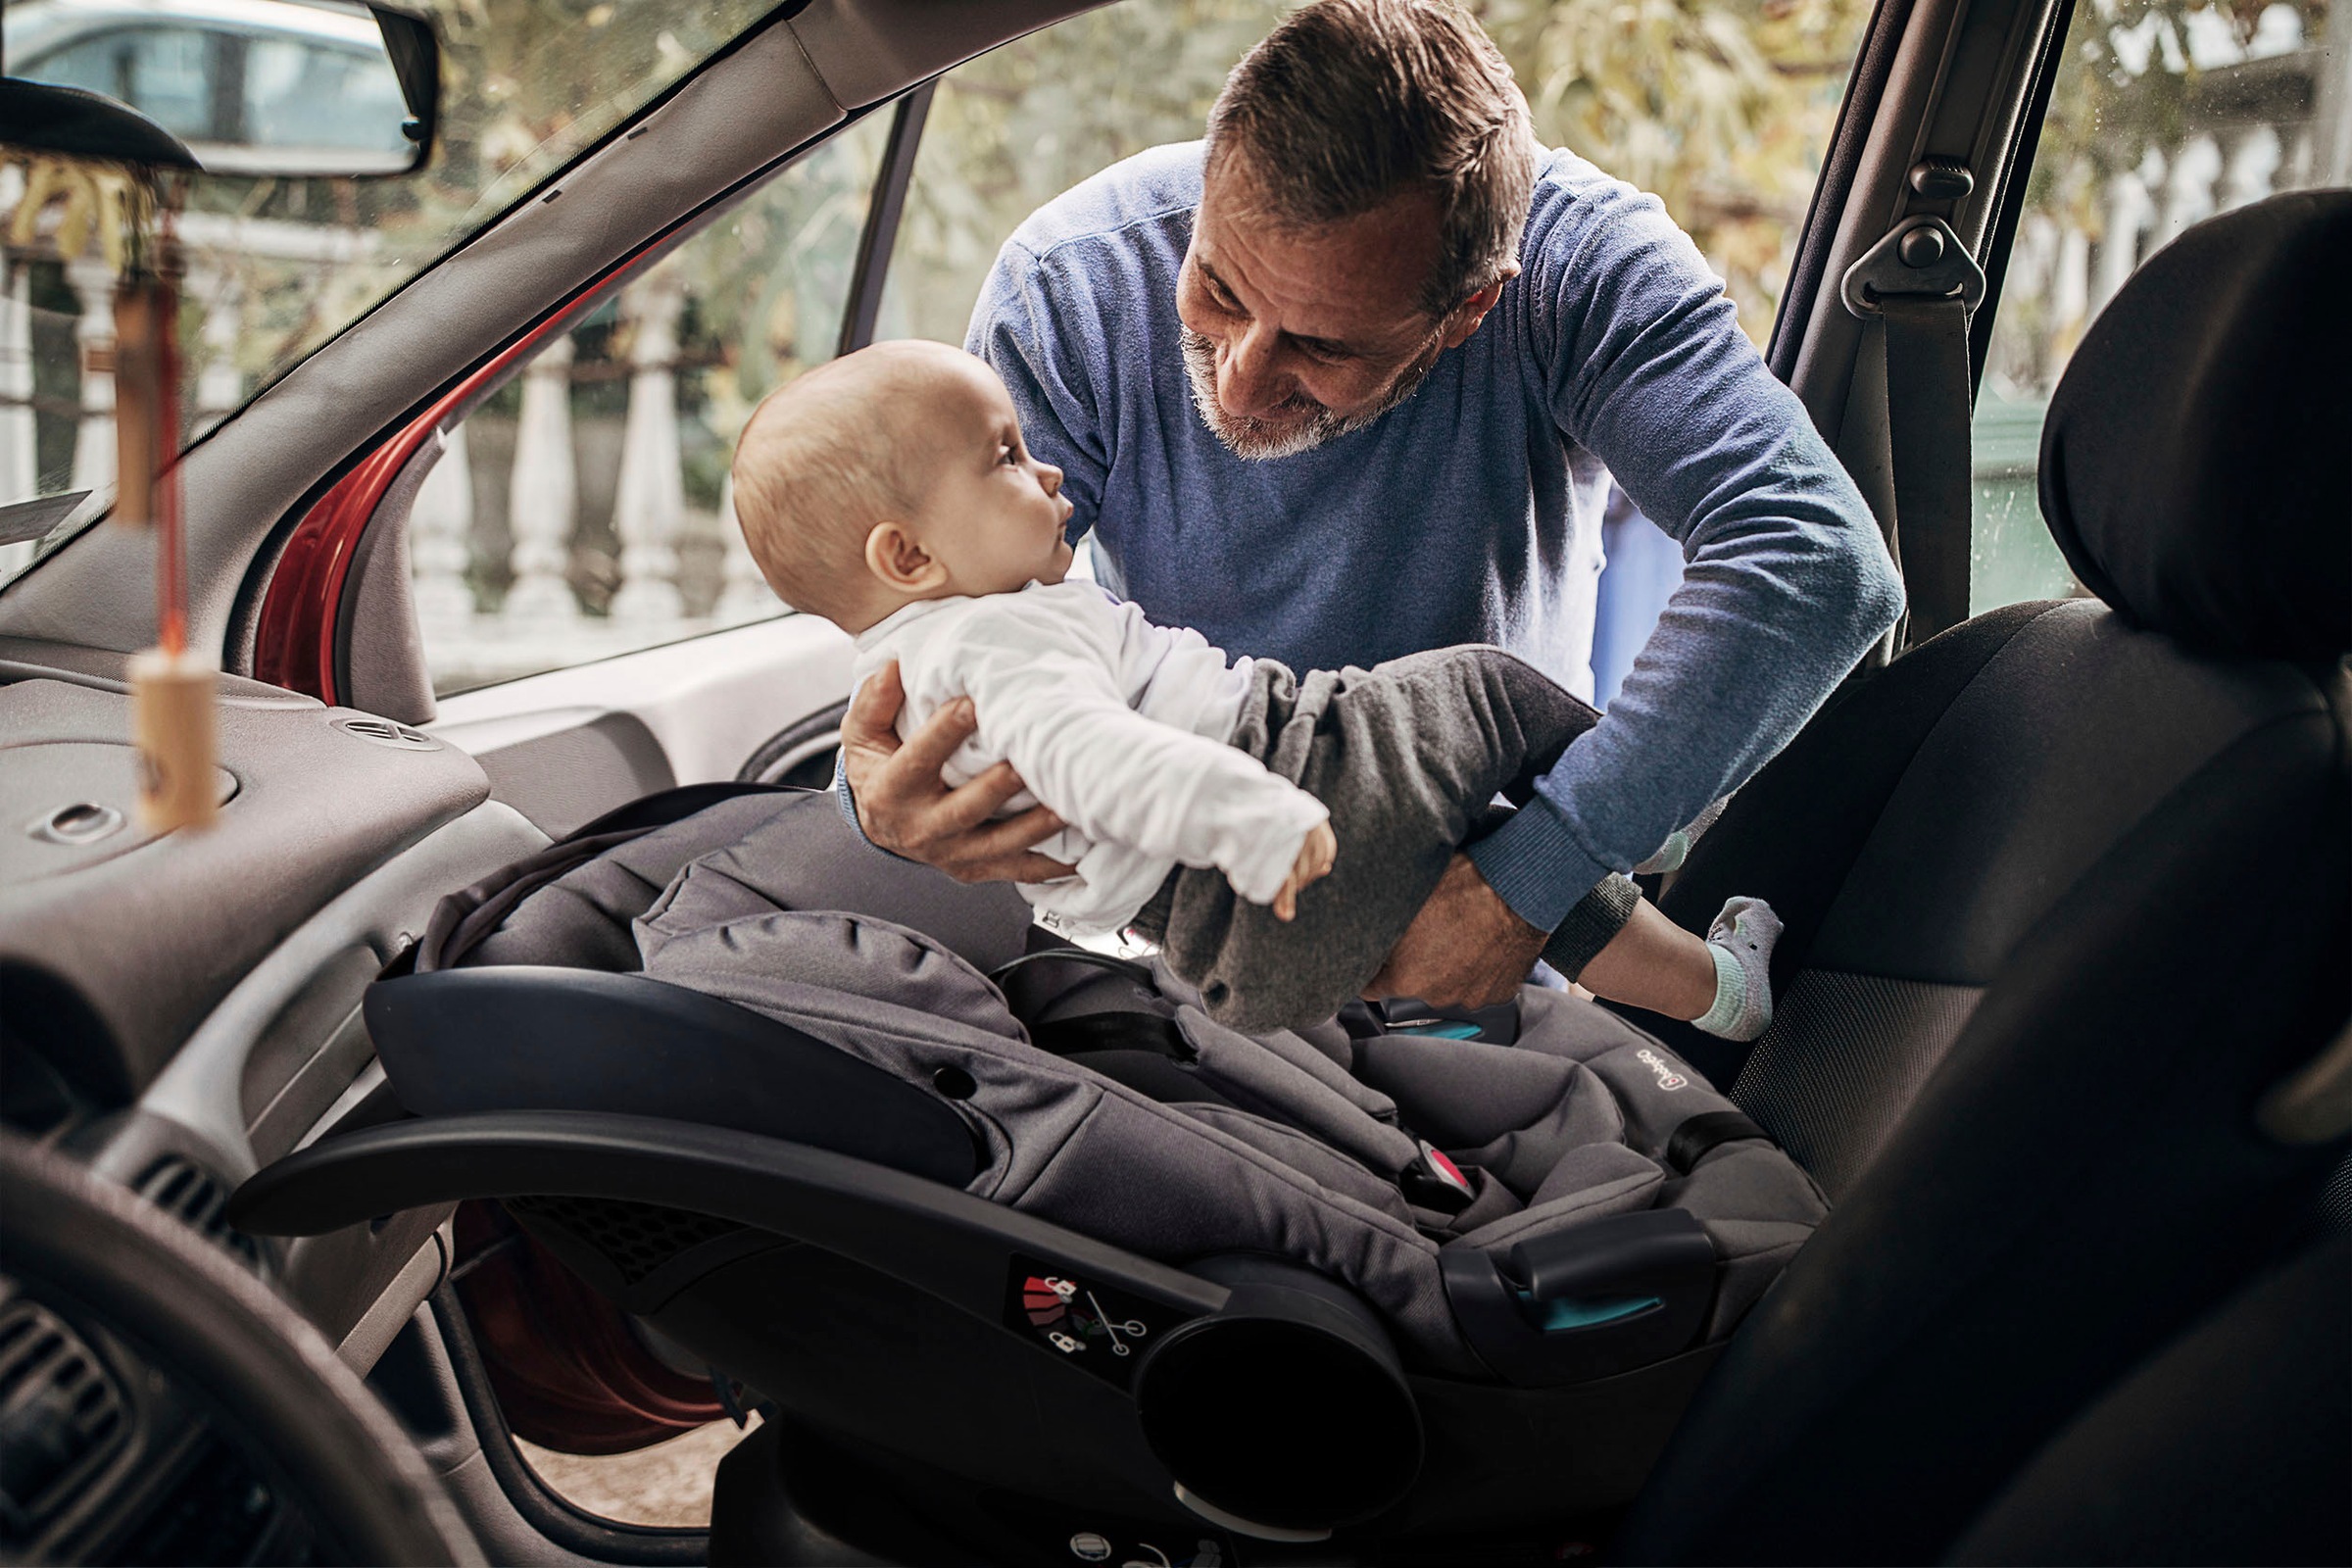 Isofix Base für Autositz/Babyschale